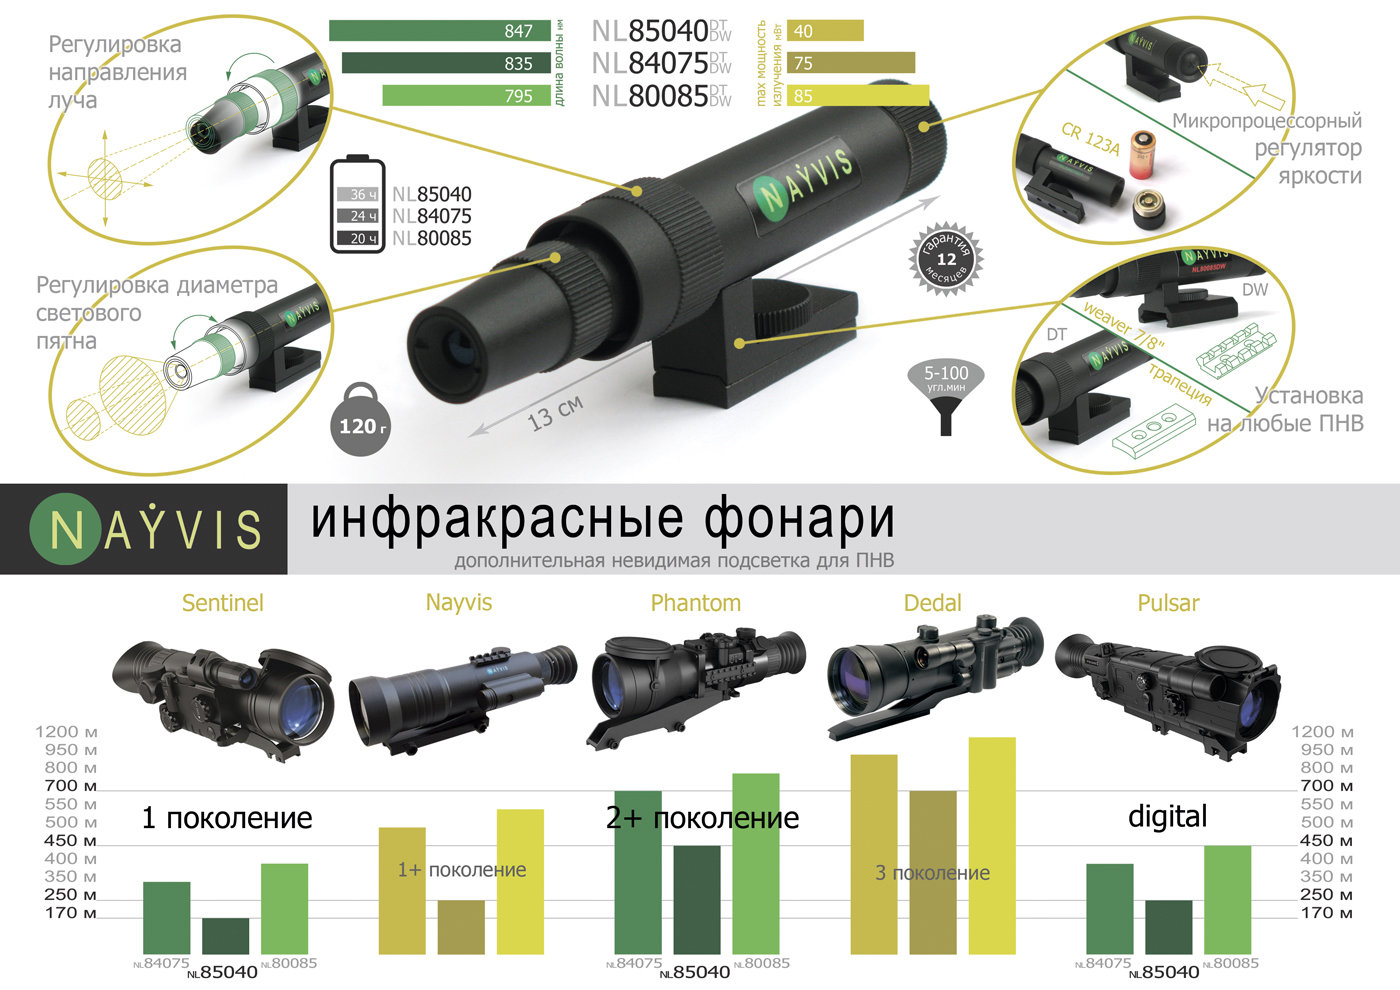 ИК фонарь NL85040DT (850) трапеция купить по оптимальной цене,  доставка по России, гарантия качества